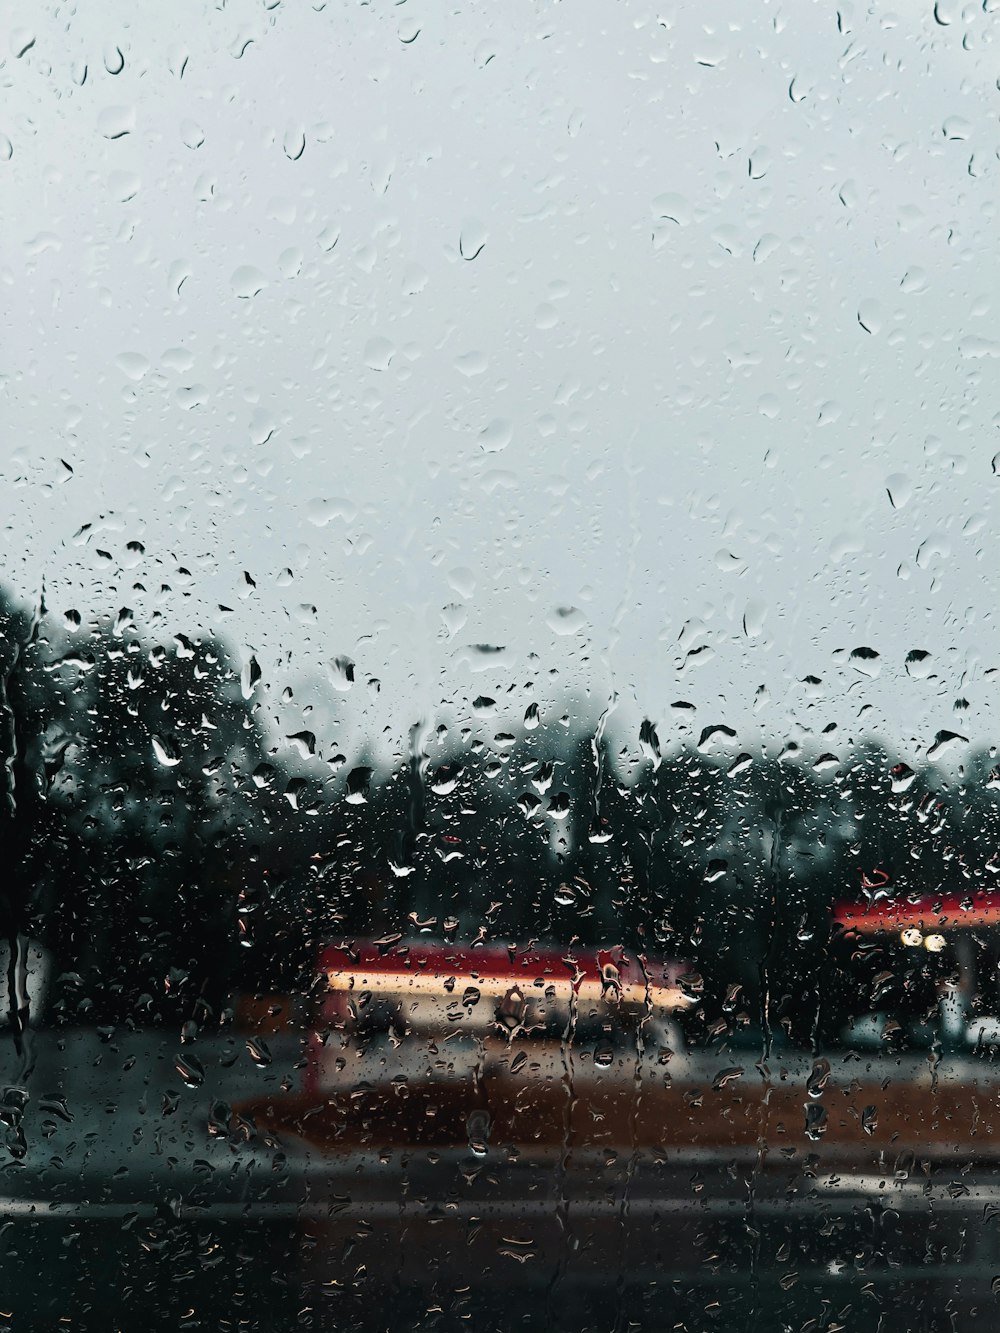 a bus is seen through a rain covered window